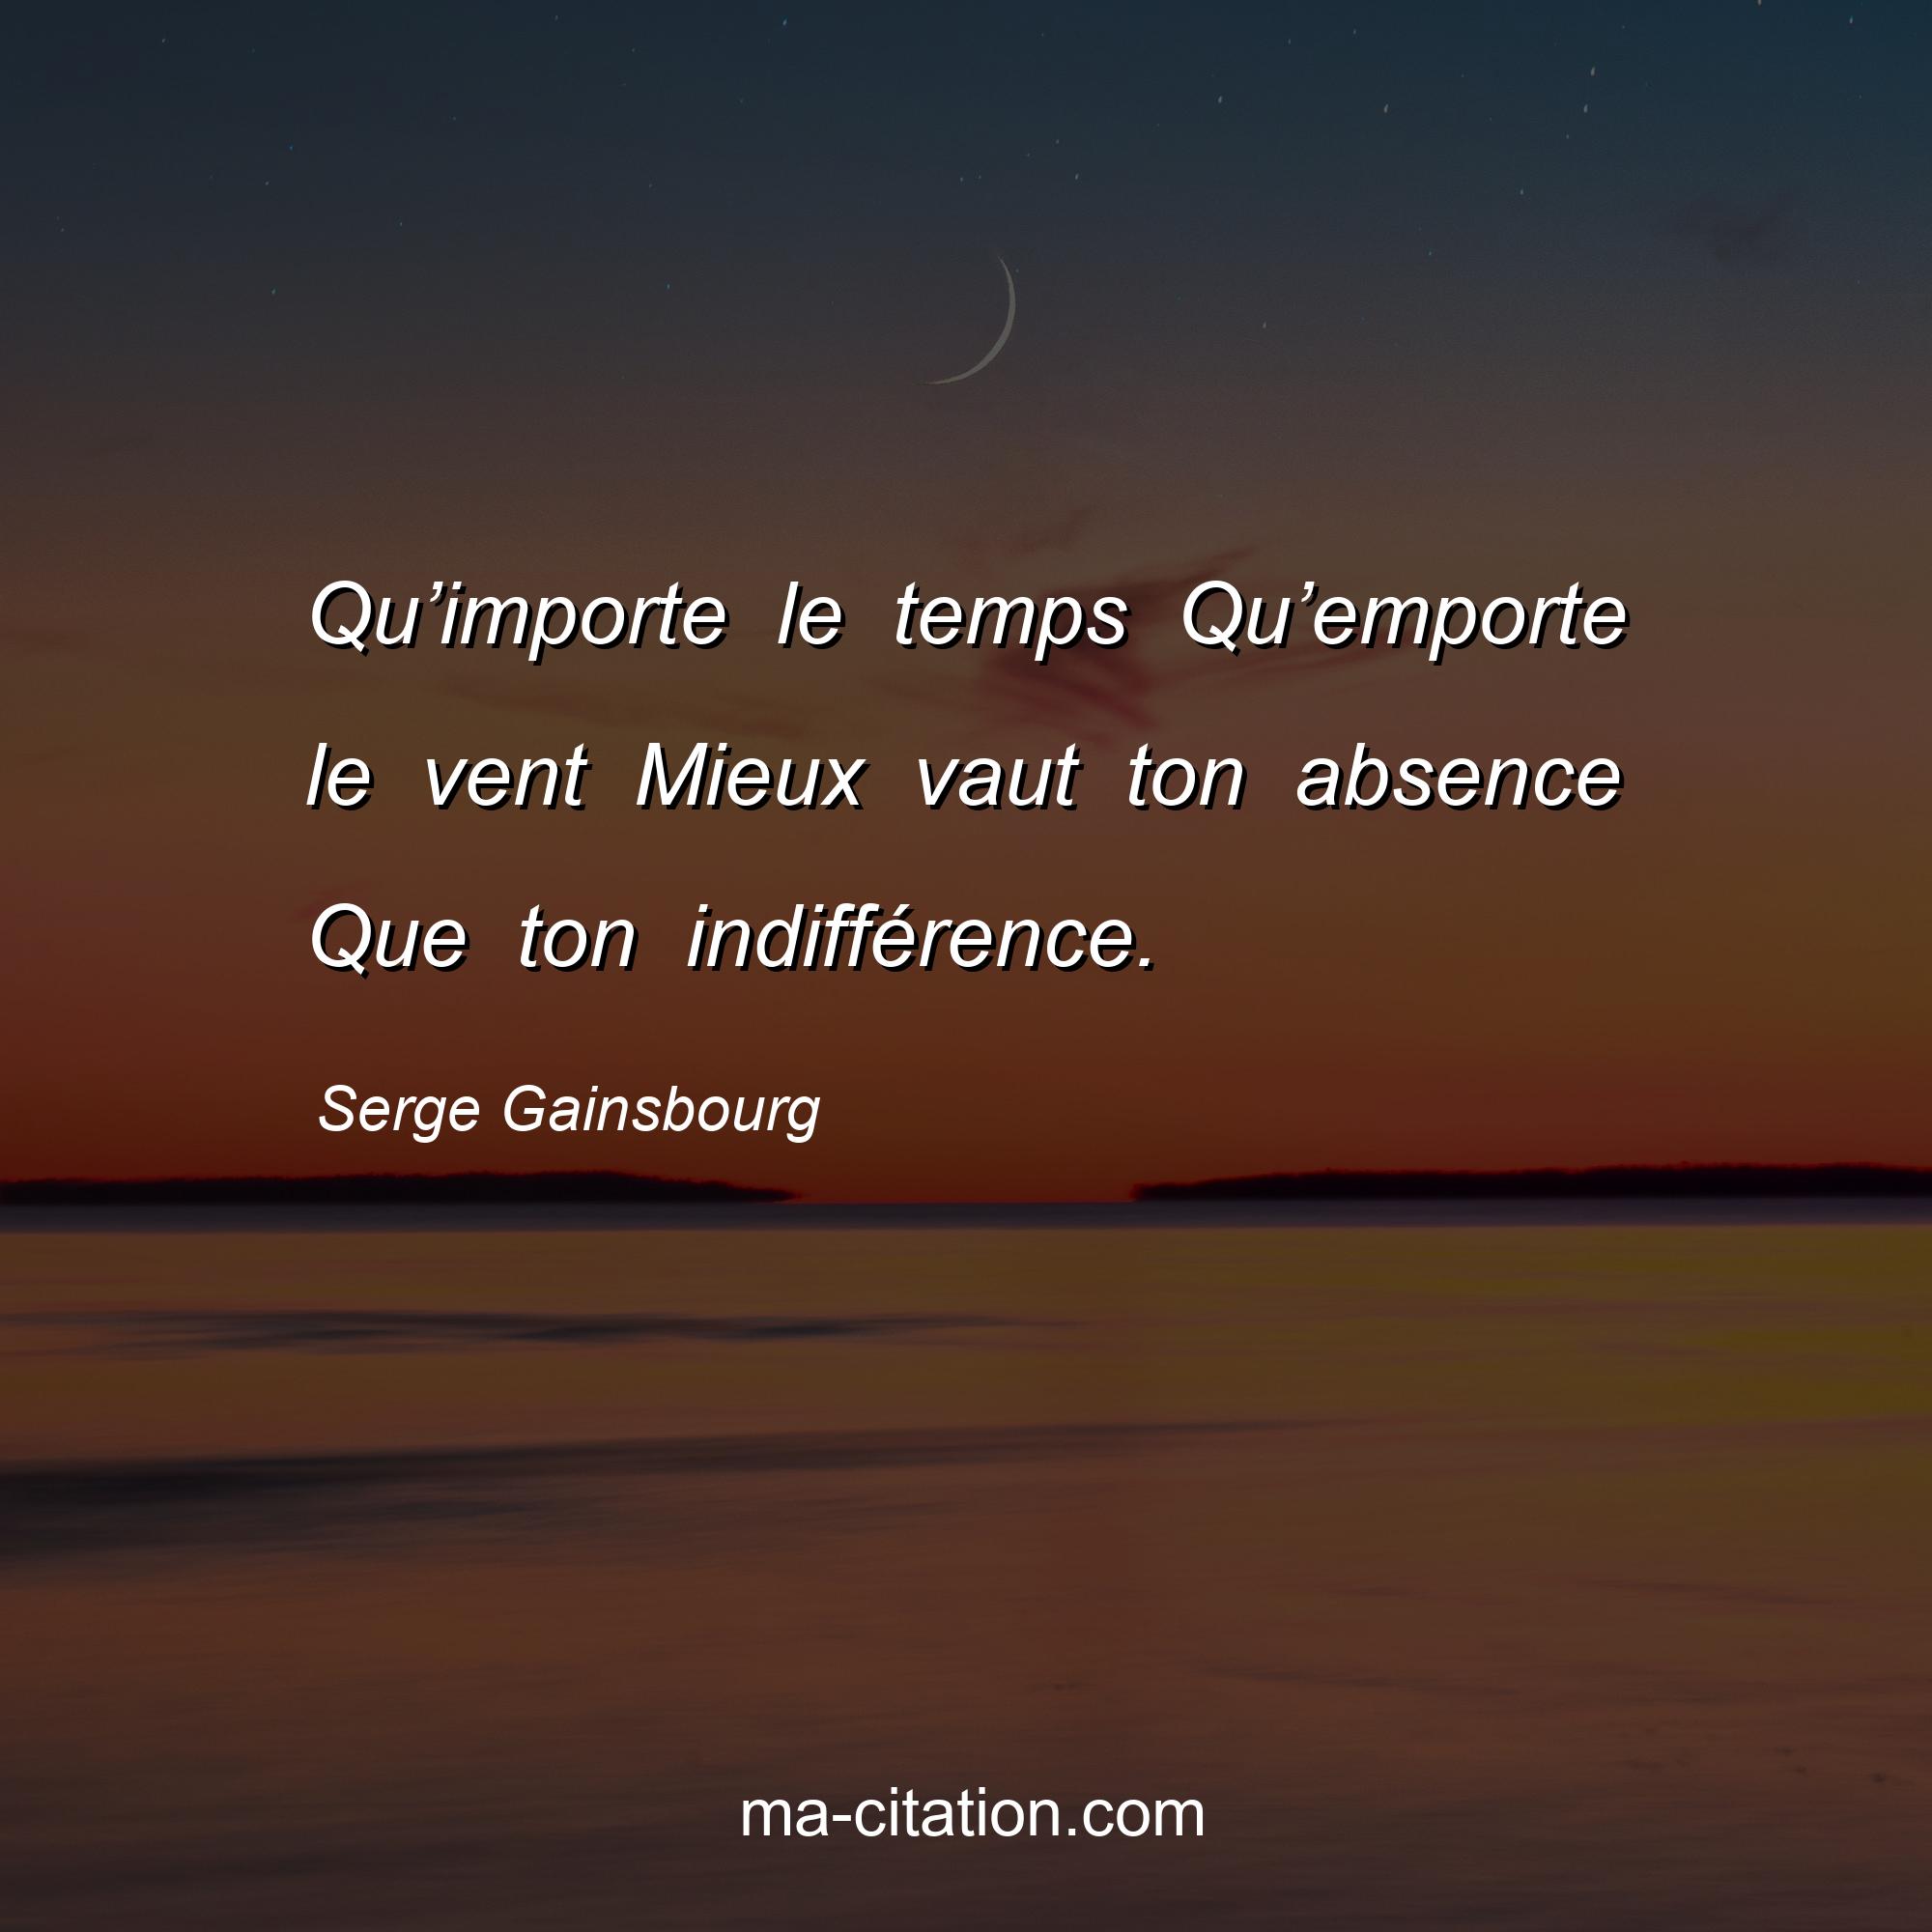 Serge Gainsbourg : Qu’importe le temps Qu’emporte le vent Mieux vaut ton absence Que ton indifférence.